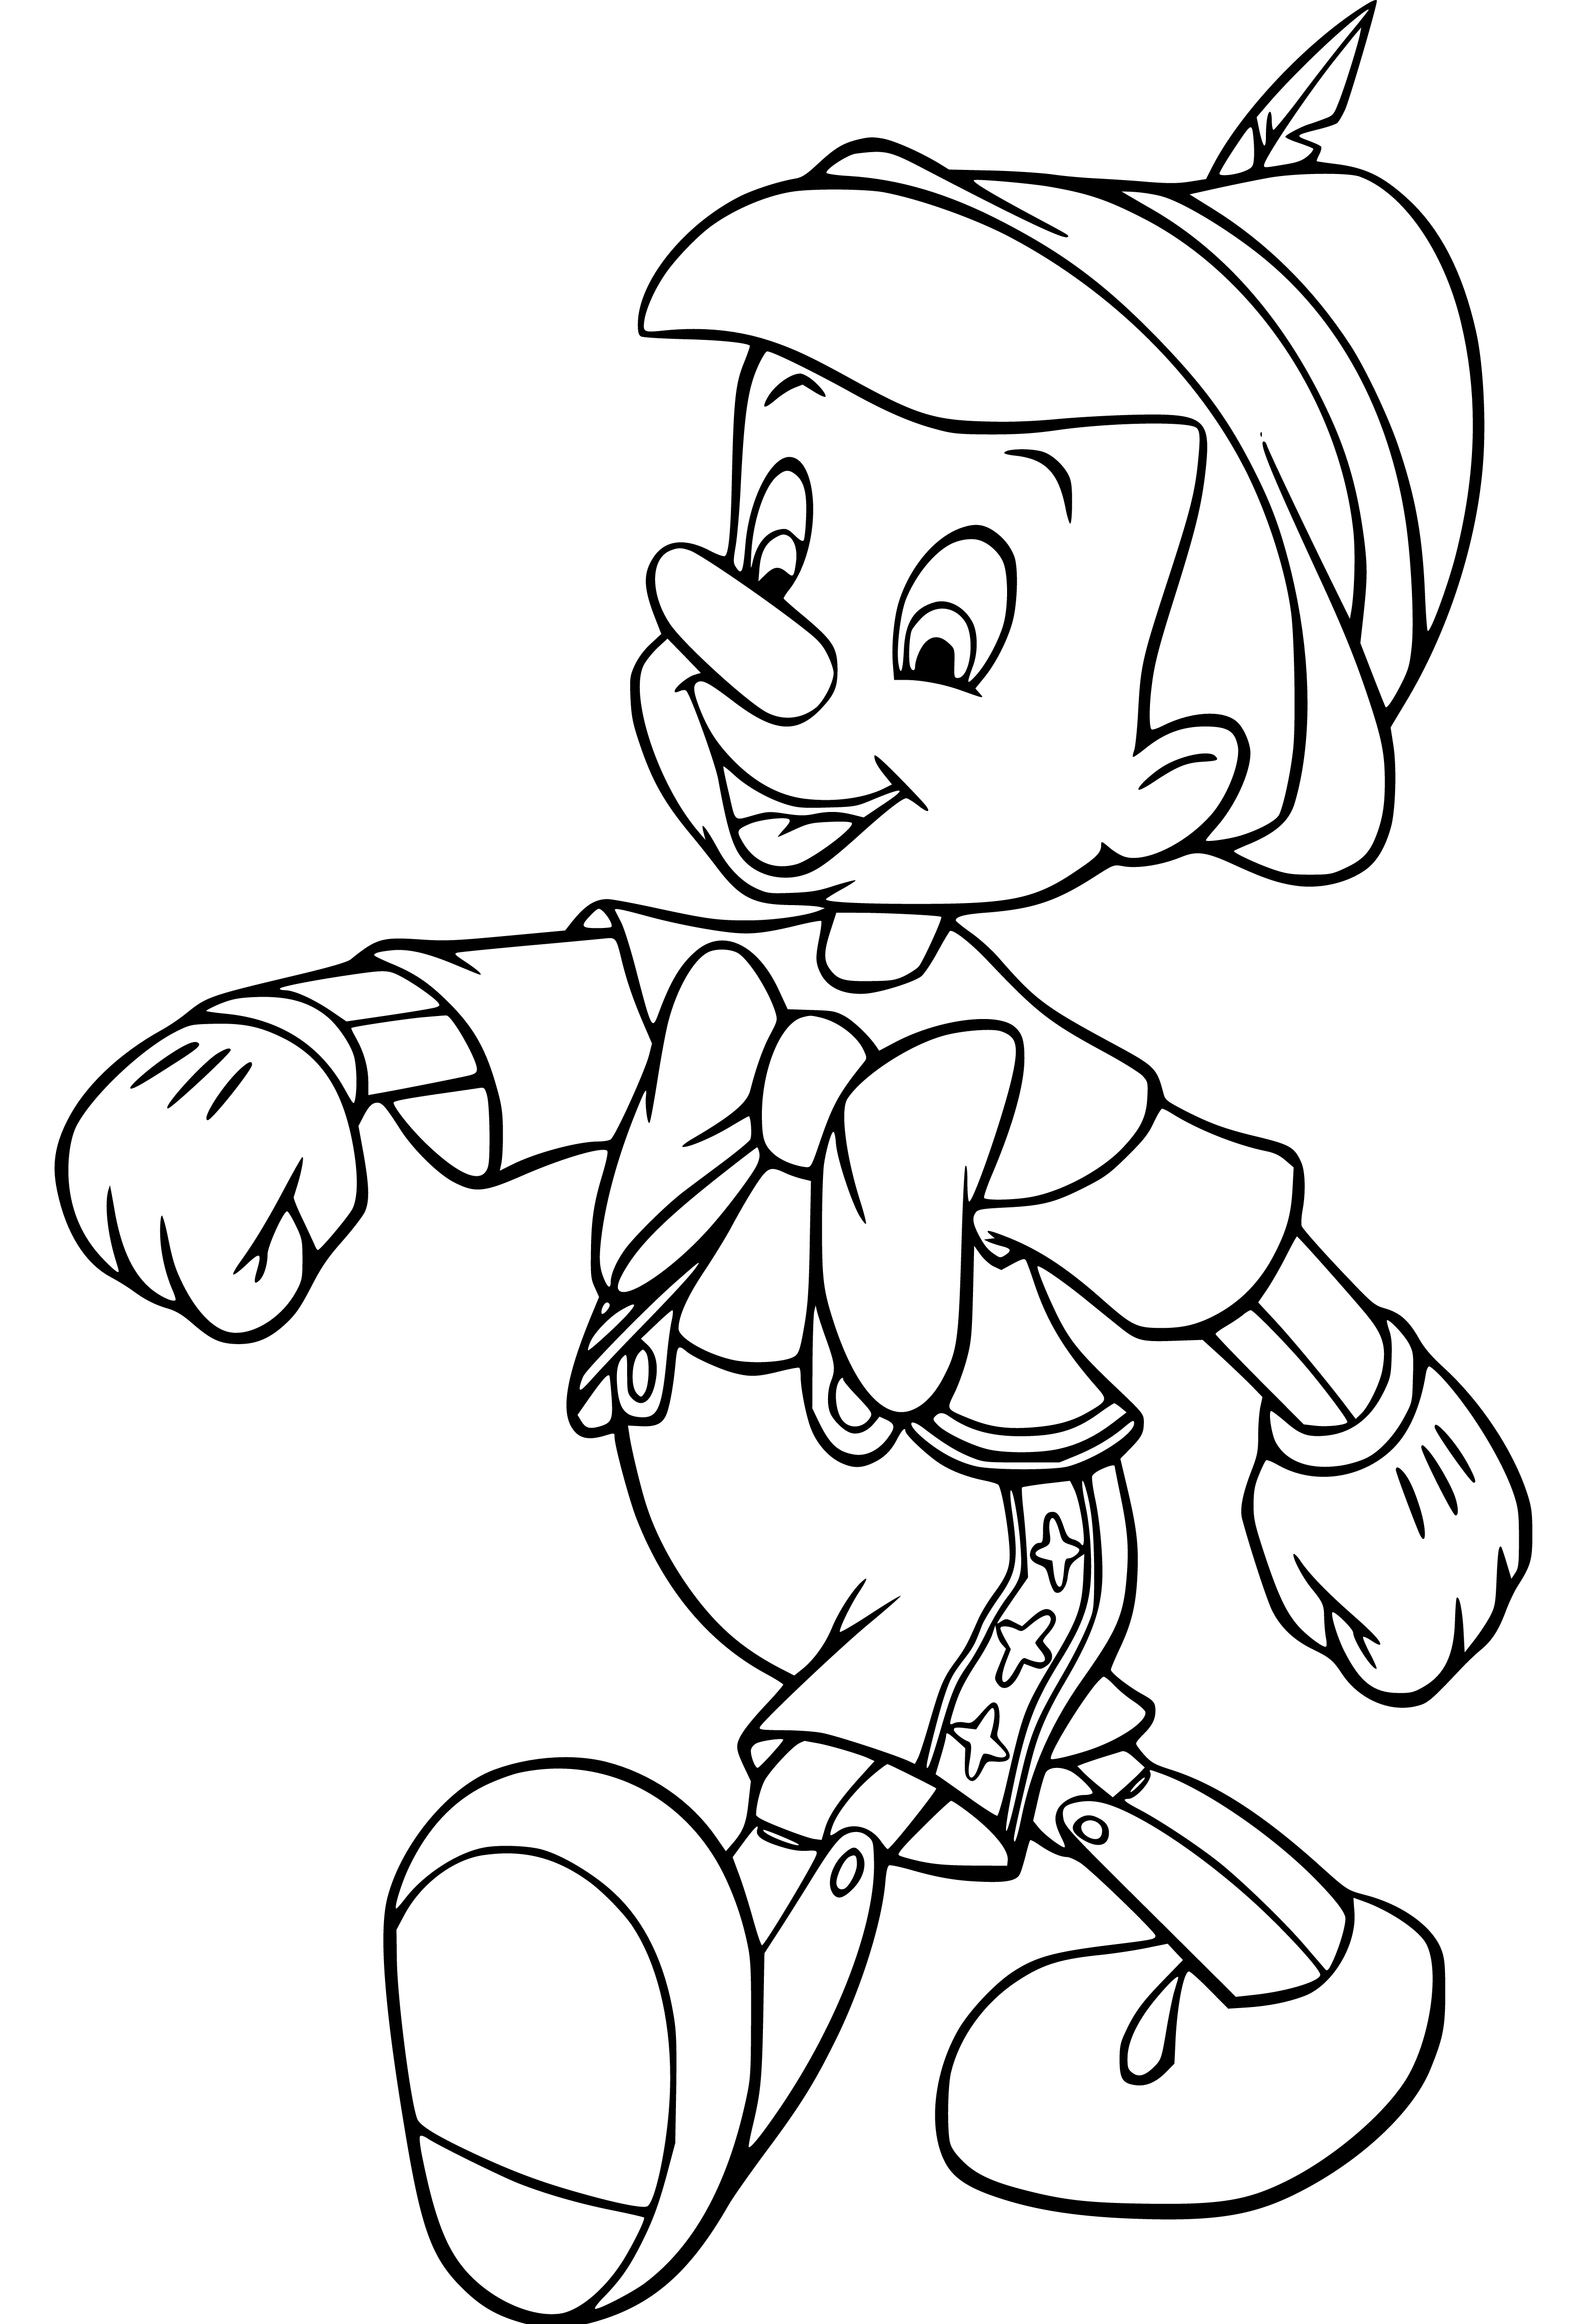 Pinocchio Walking Coloring Sheet - SheetalColor.com